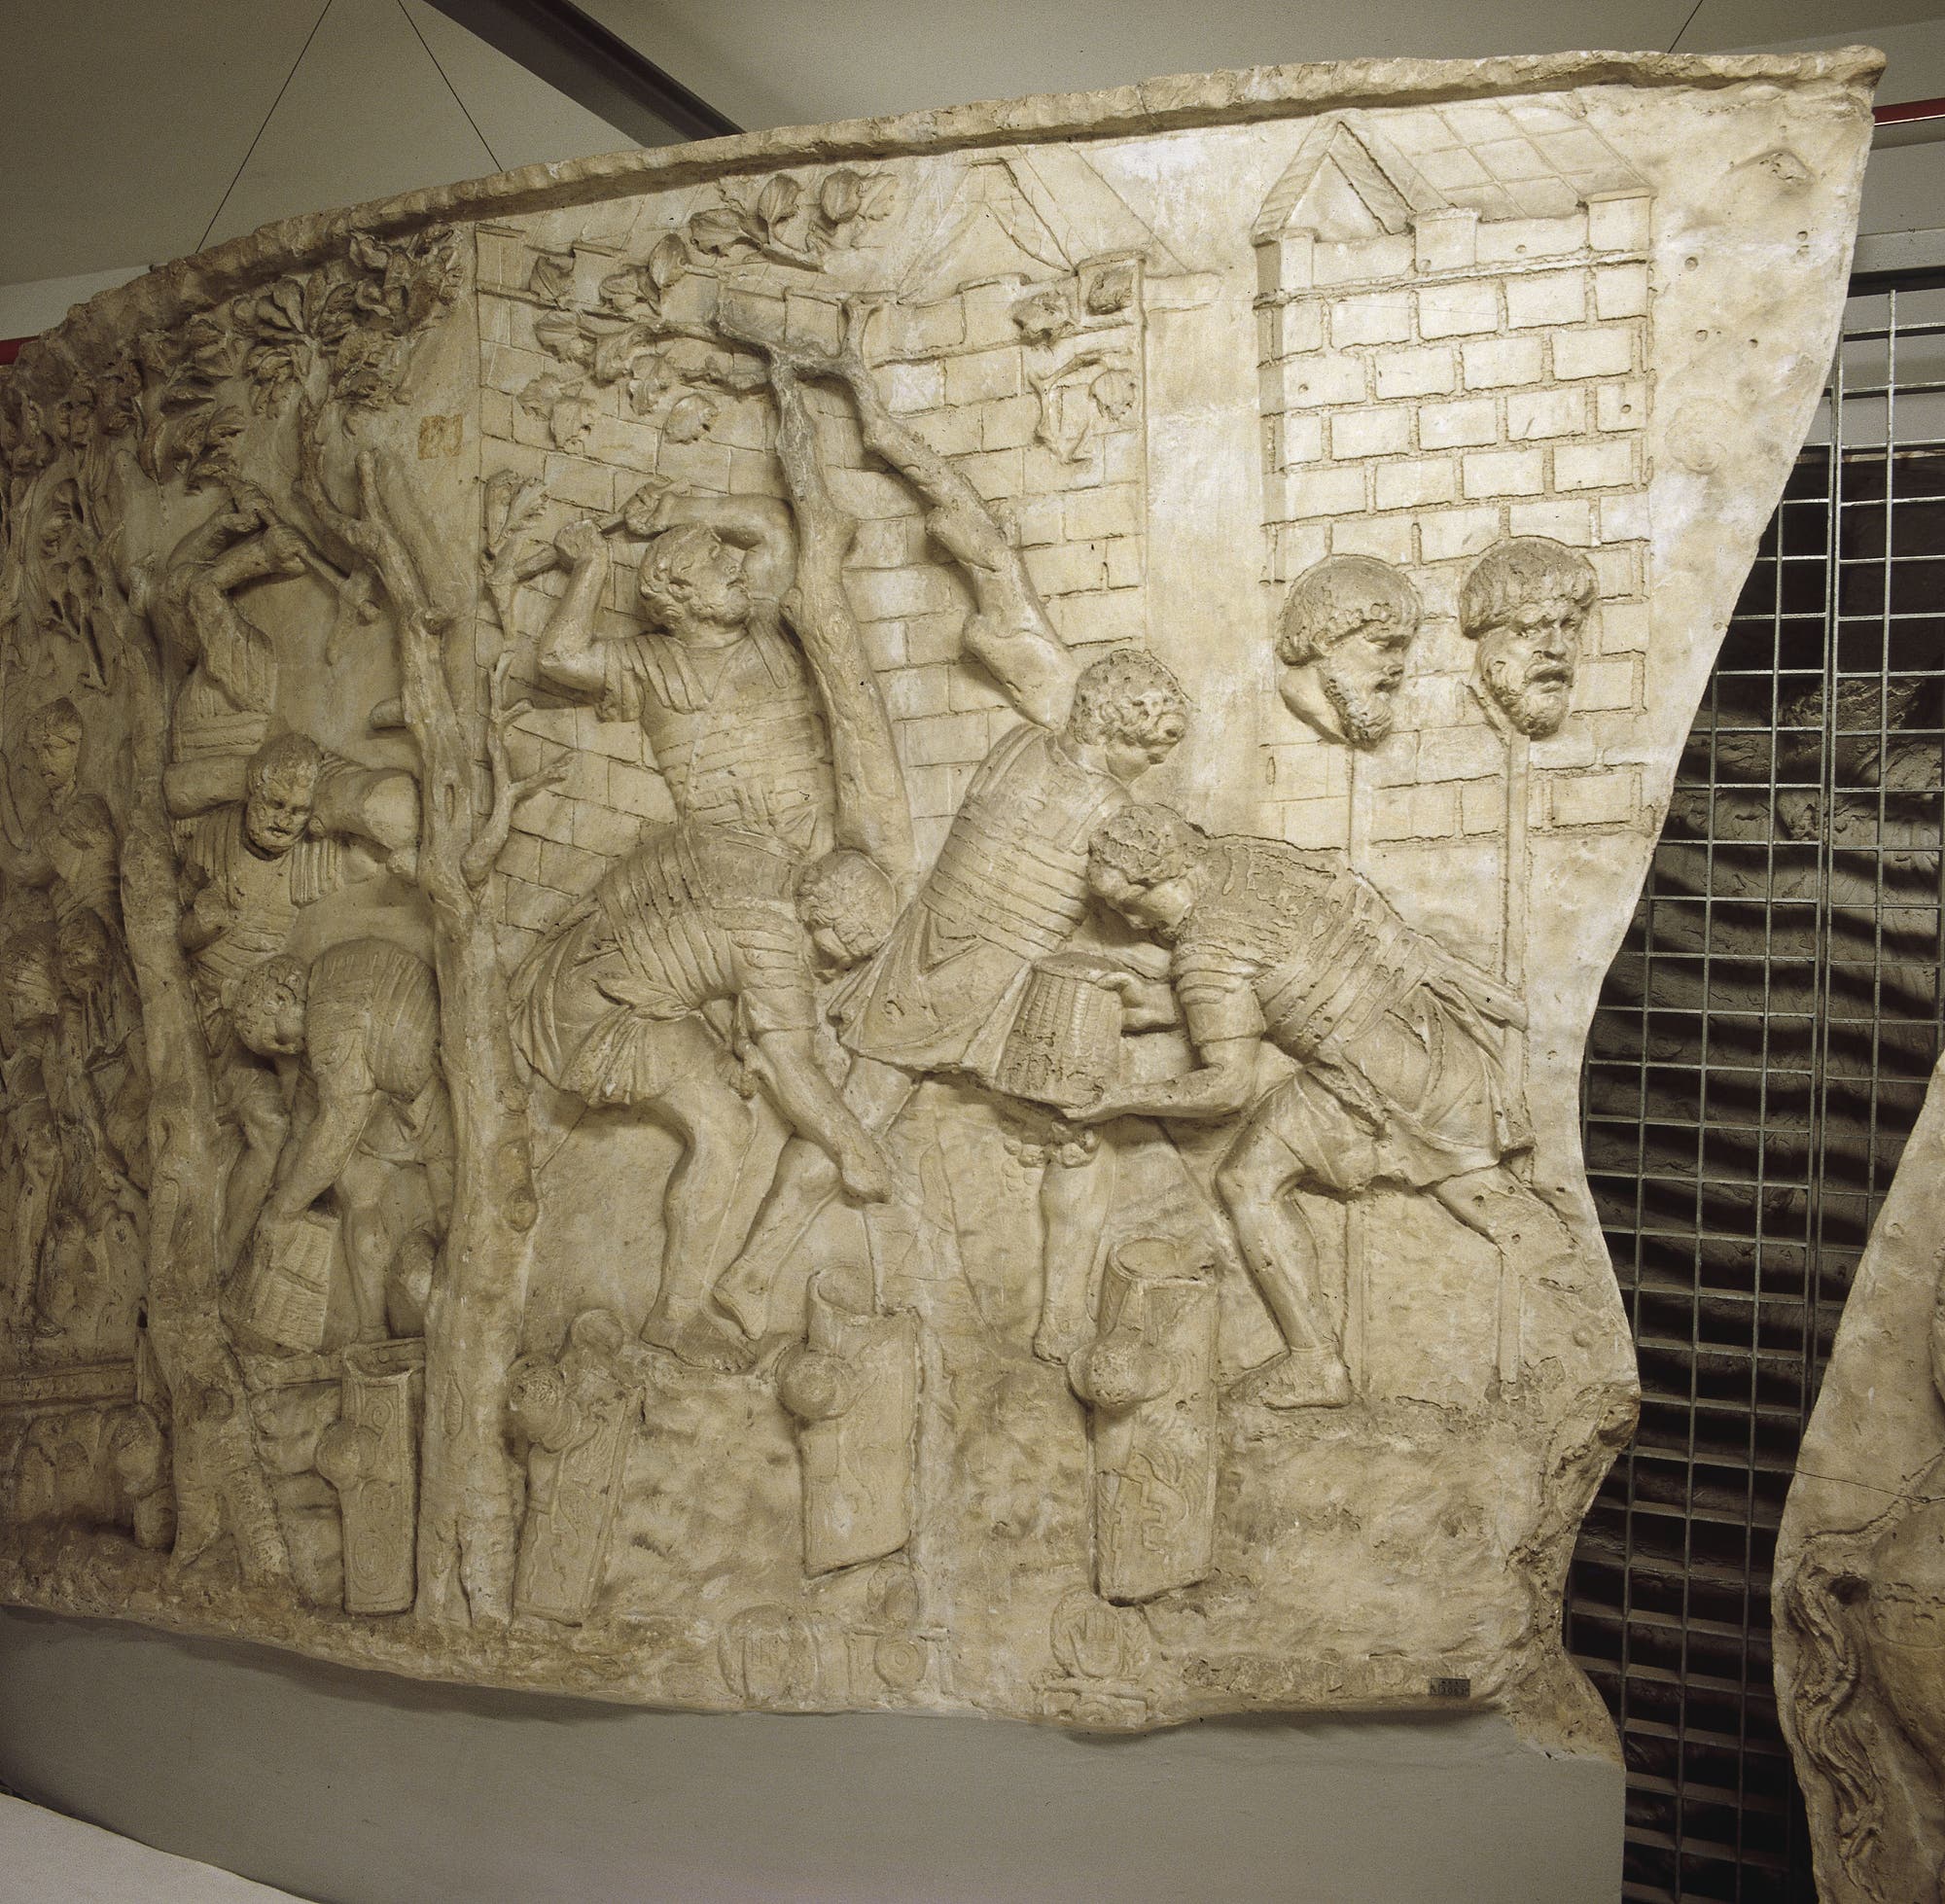 Legionäre beim Straßenbau, dargestellt auf einem Relief der Trajanssäule in Rom.